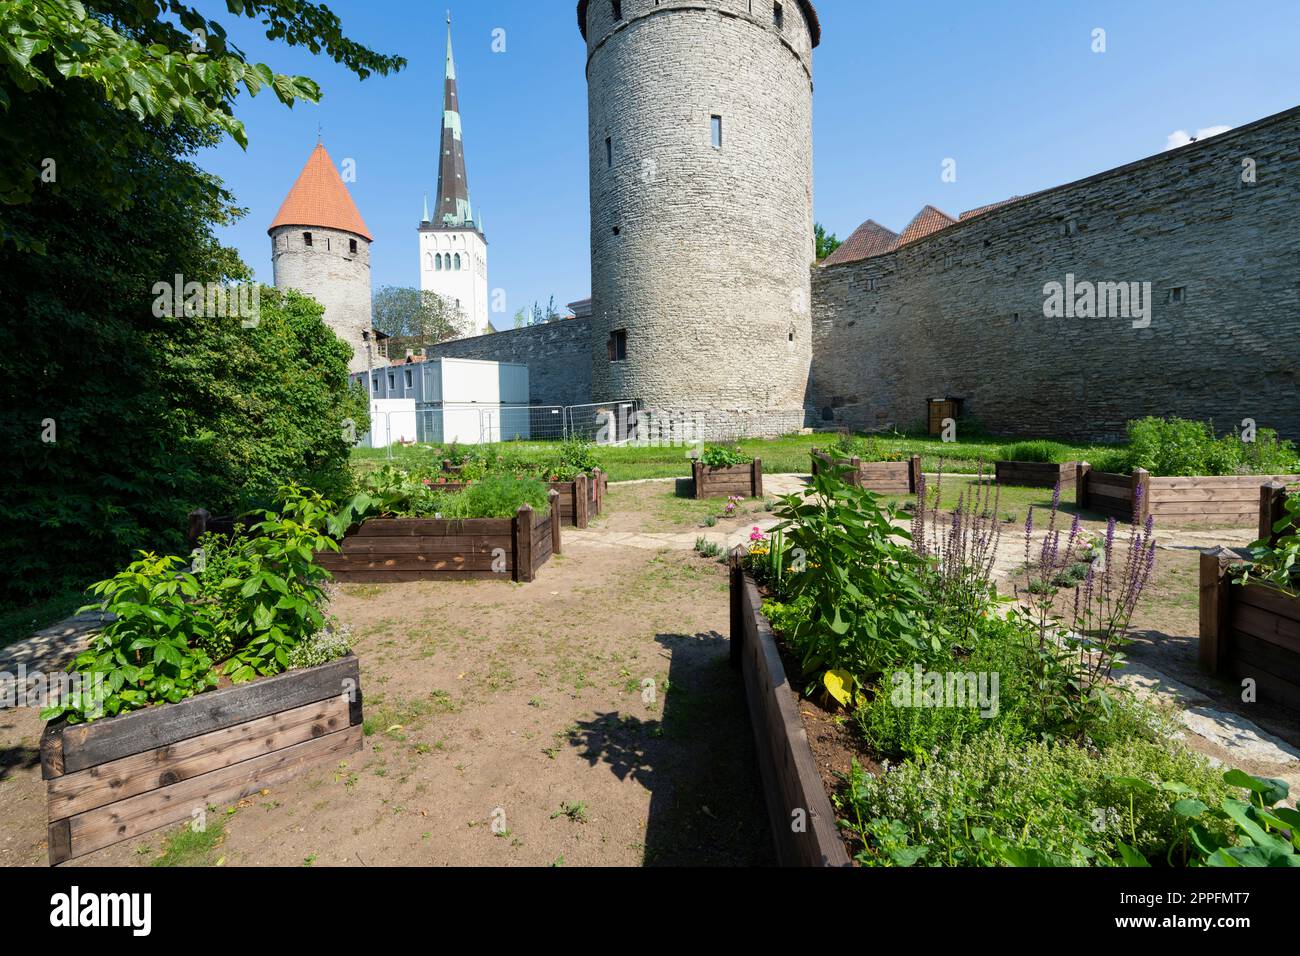 The old town community garden in Tallinn, Estonia Stock Photo